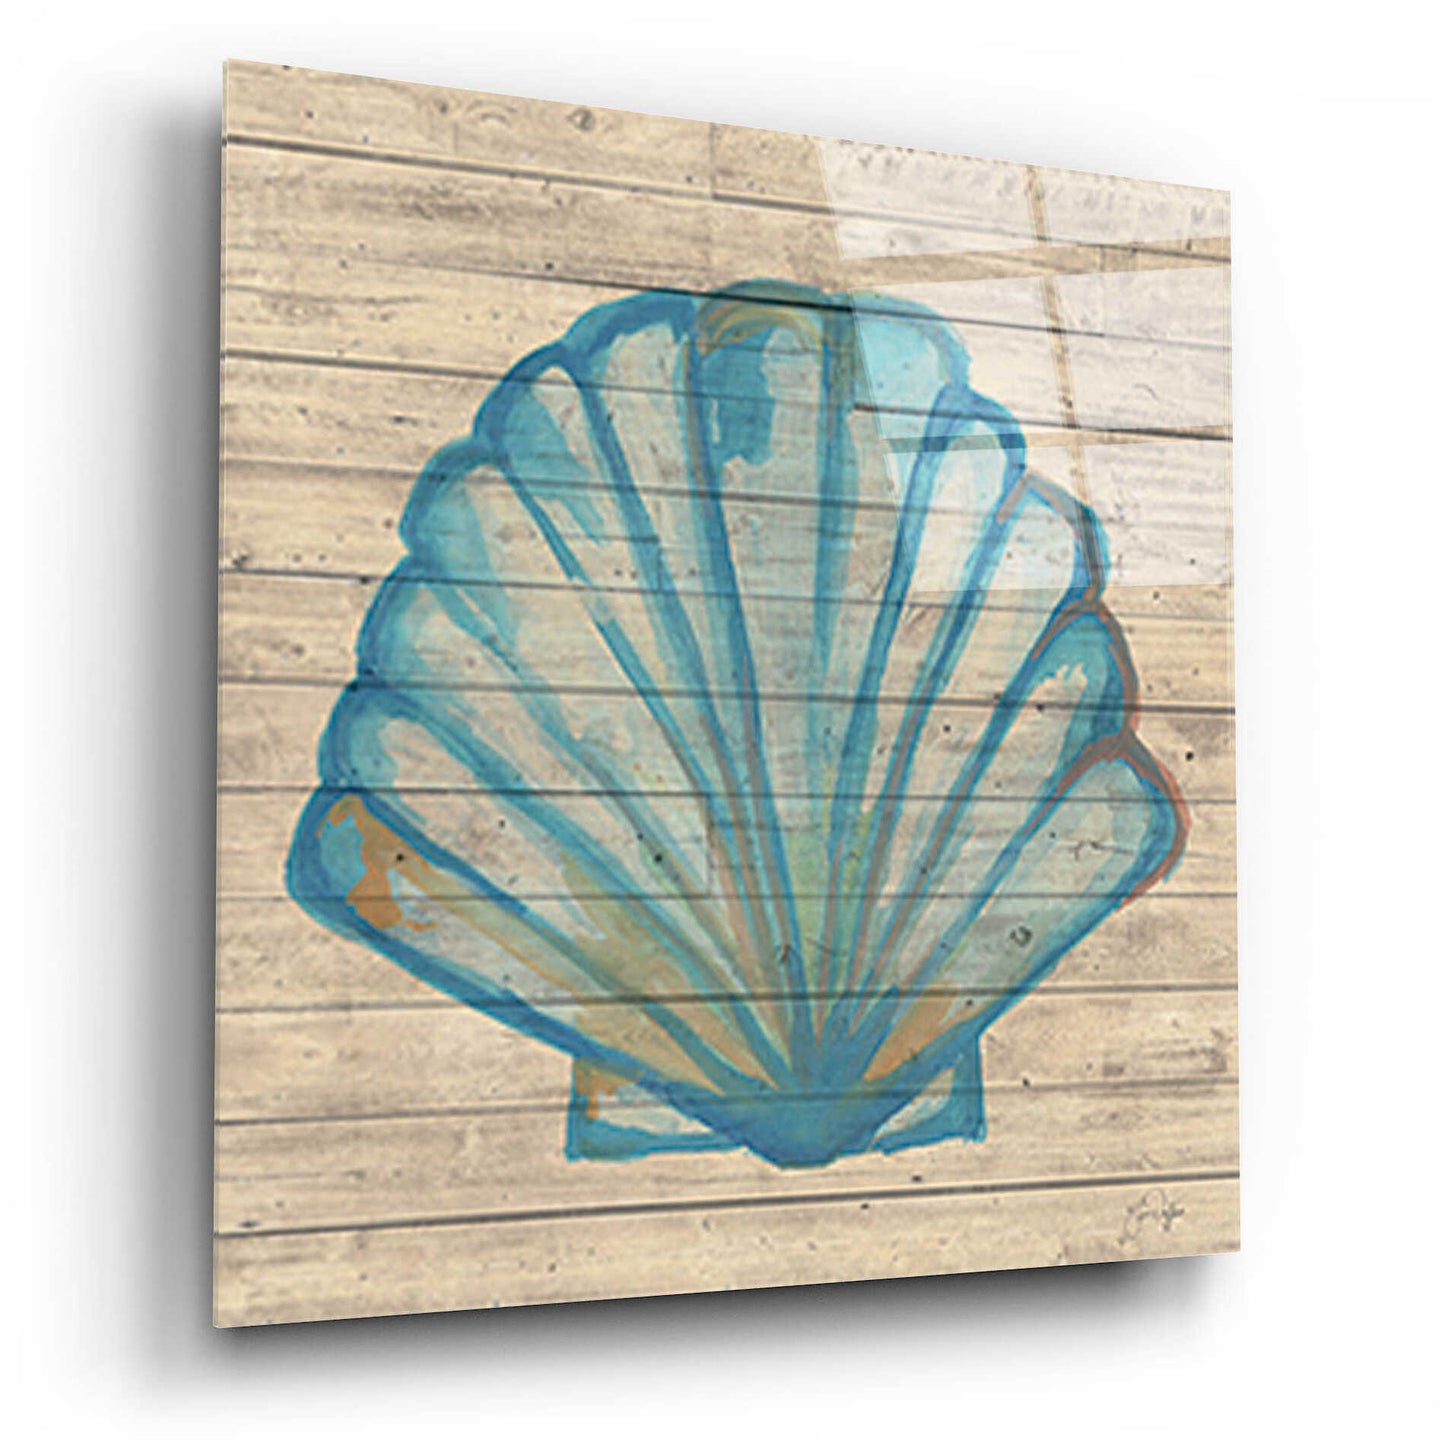 Epic Art 'A Seashell Wish' by Yass Naffas Designs, Acrylic Glass Wall Art,12x12